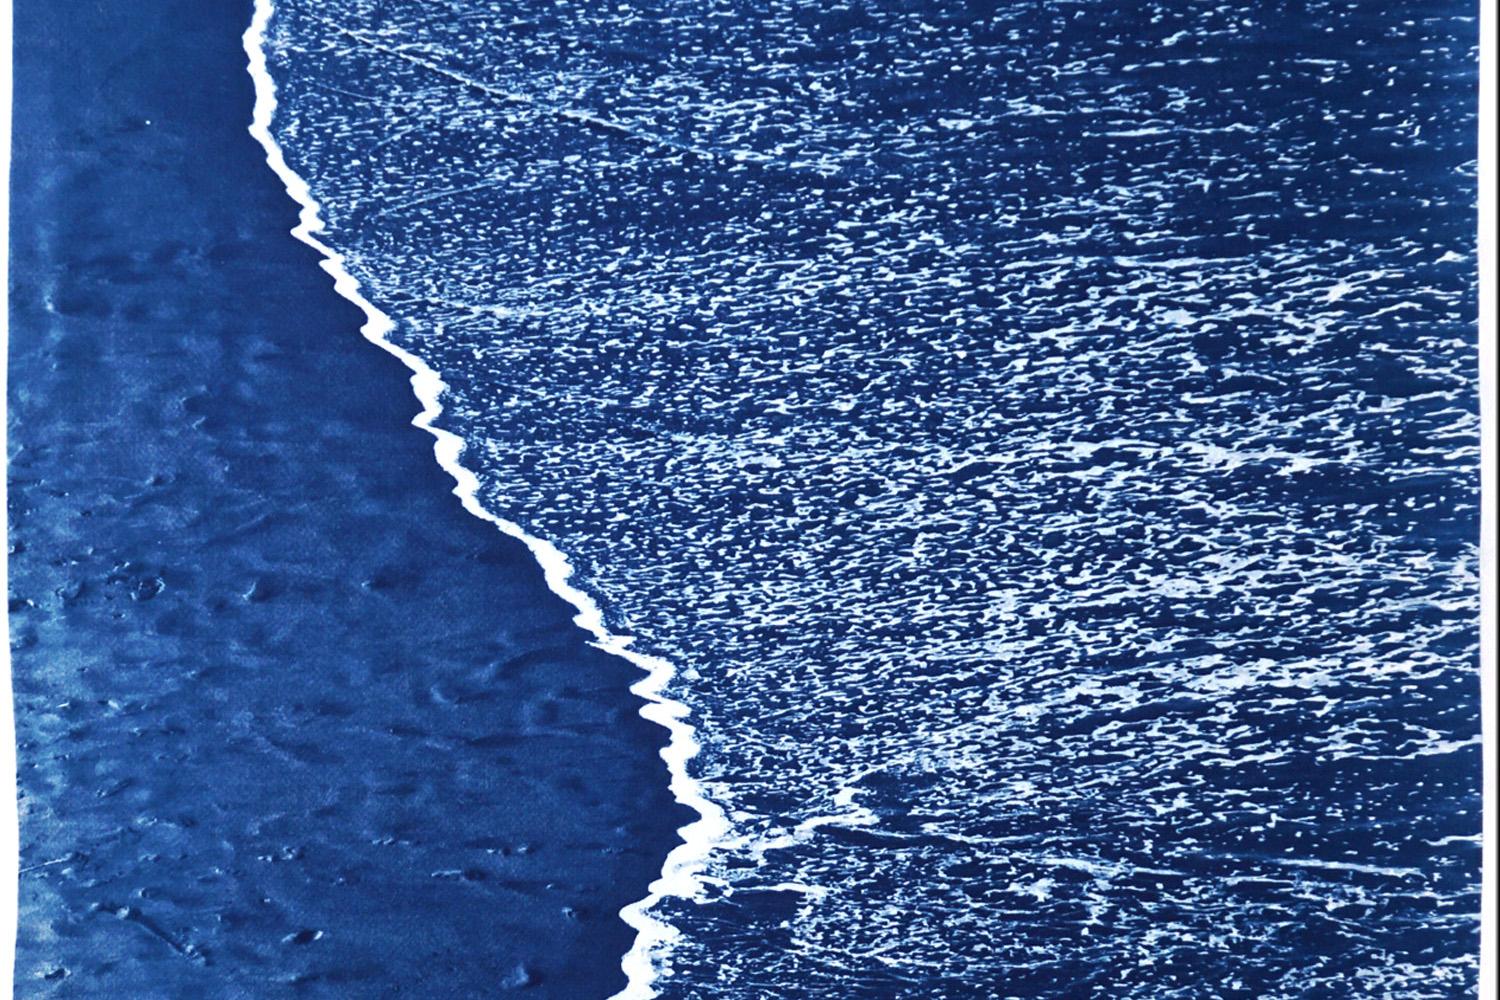 Dies ist eine exklusive handgedruckte Cyanotypie eines Sandstrandes mit Schaum. 

Einzelheiten:
+ Titel: Sandstrand mit Schaumstoff 
+ Auflagenhöhe: 100
+ Gestempelt und mit Echtheitszertifikat versehen.
+ Das Papier misst 100 cm x 70 cm (etwa 40 cm